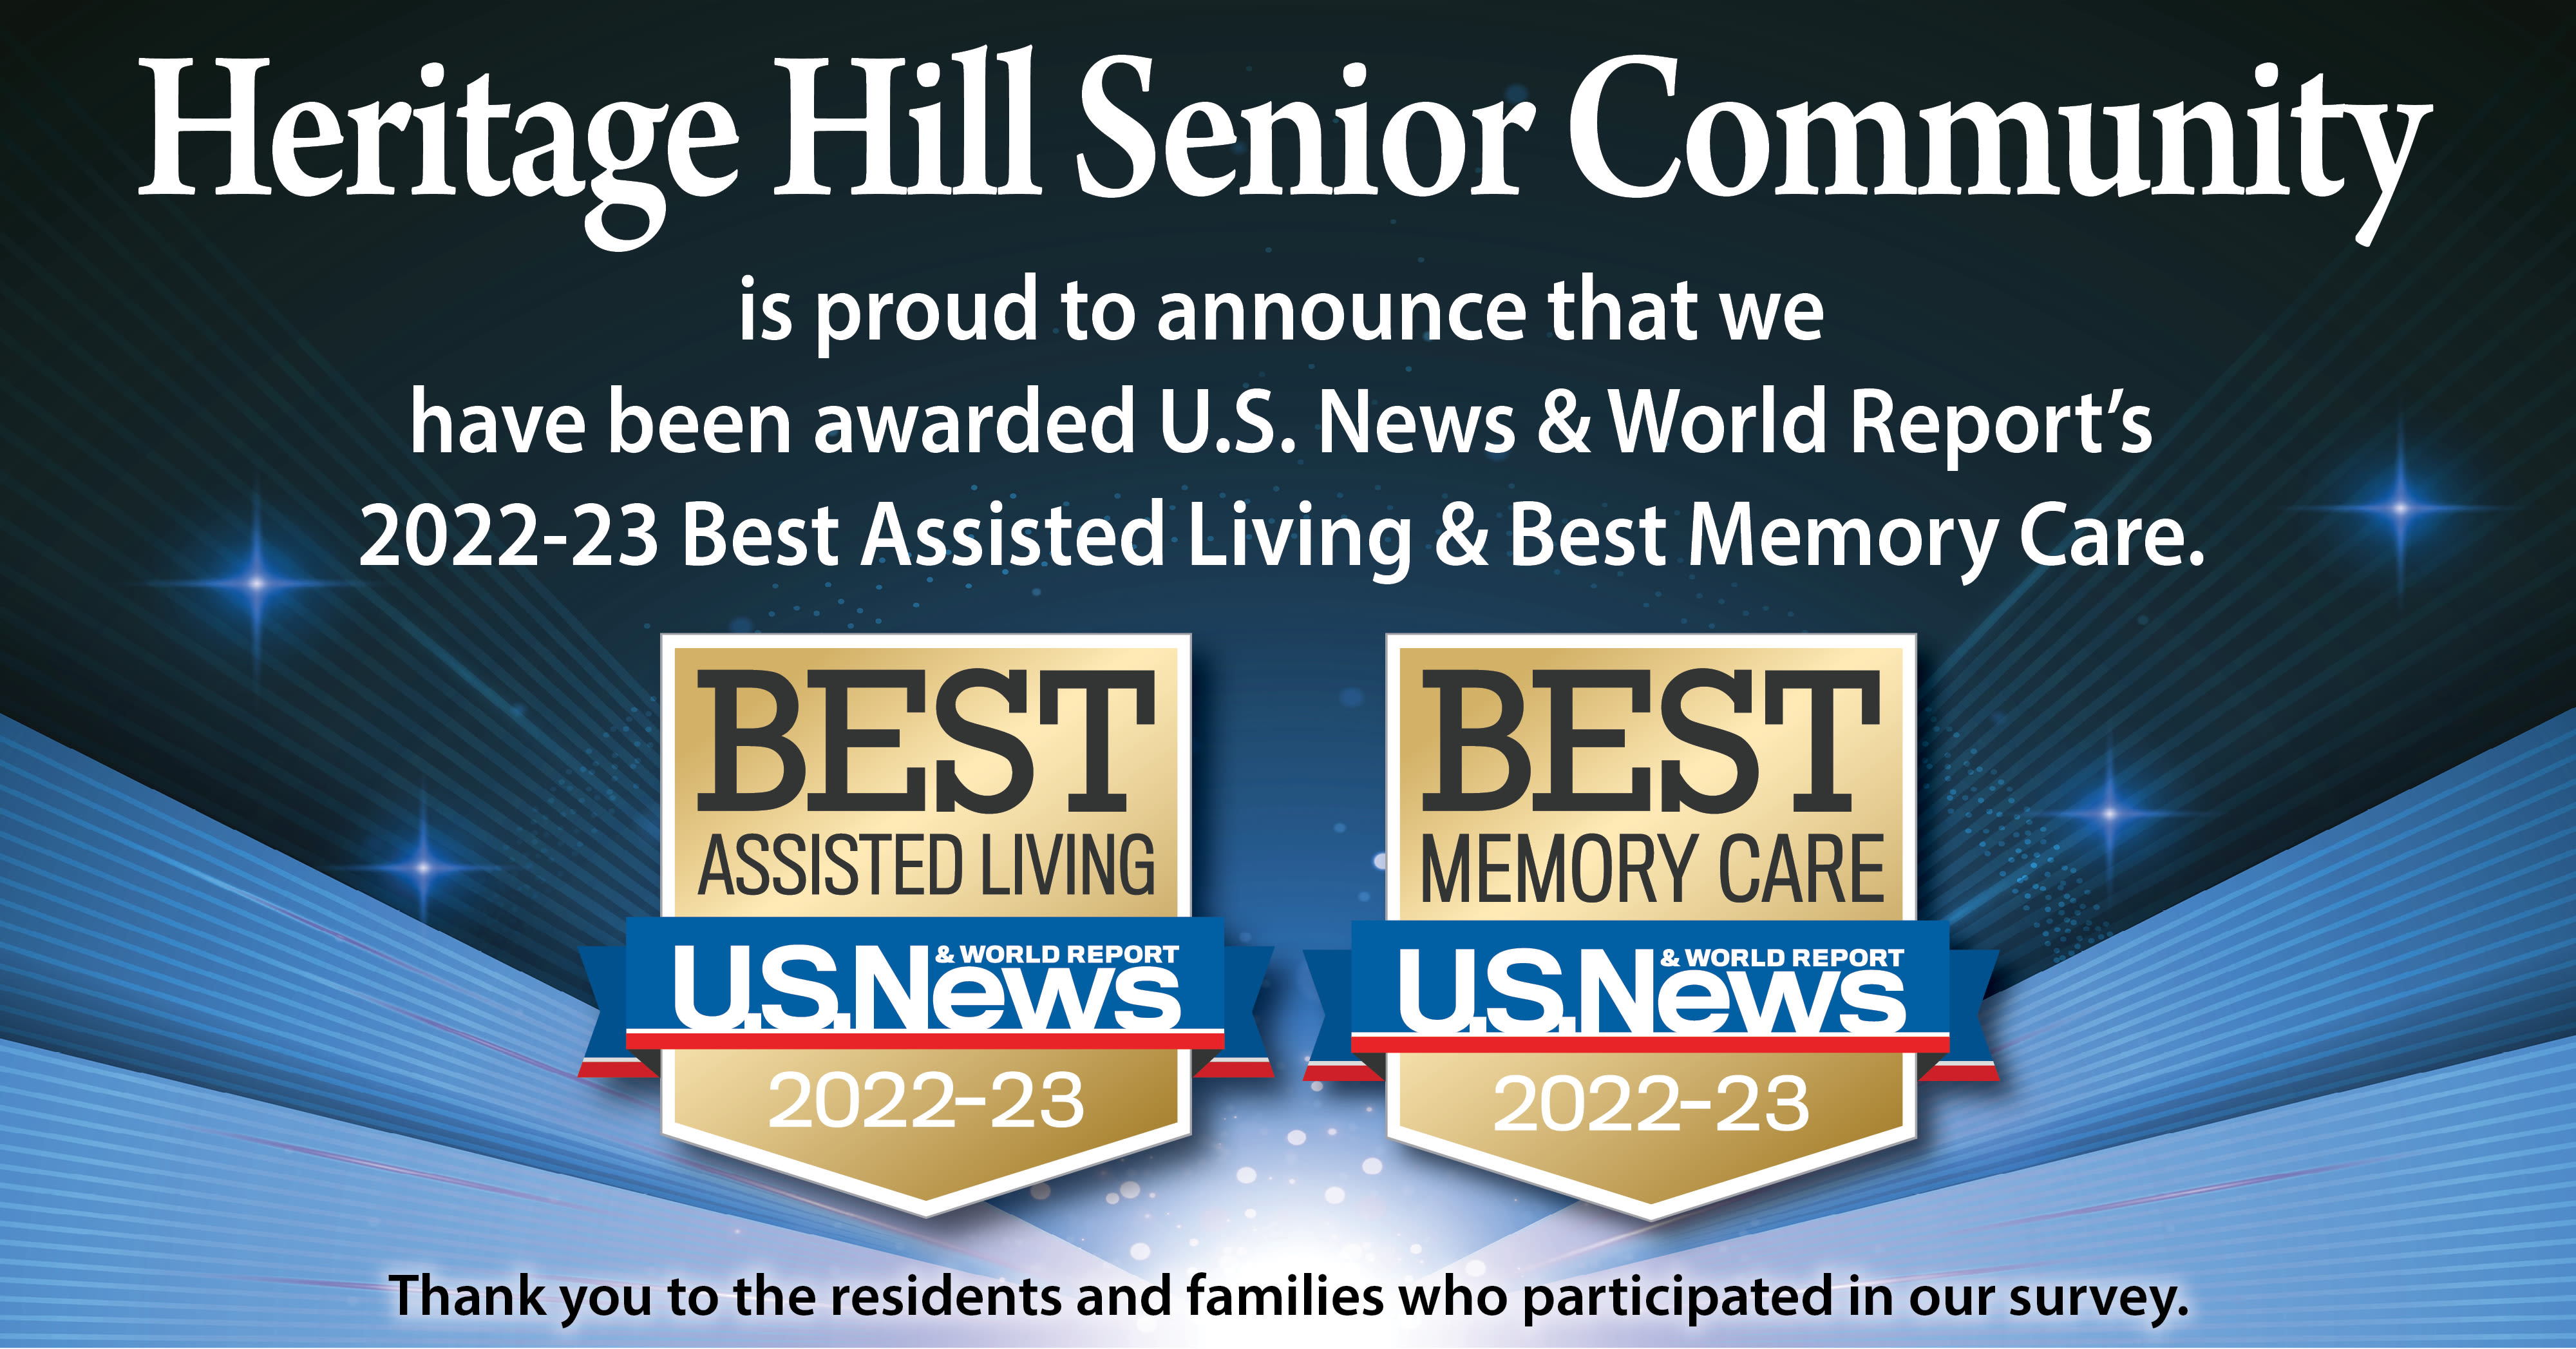 US News Best Senior Living Award 2022 for Heritage Hill Senior Community